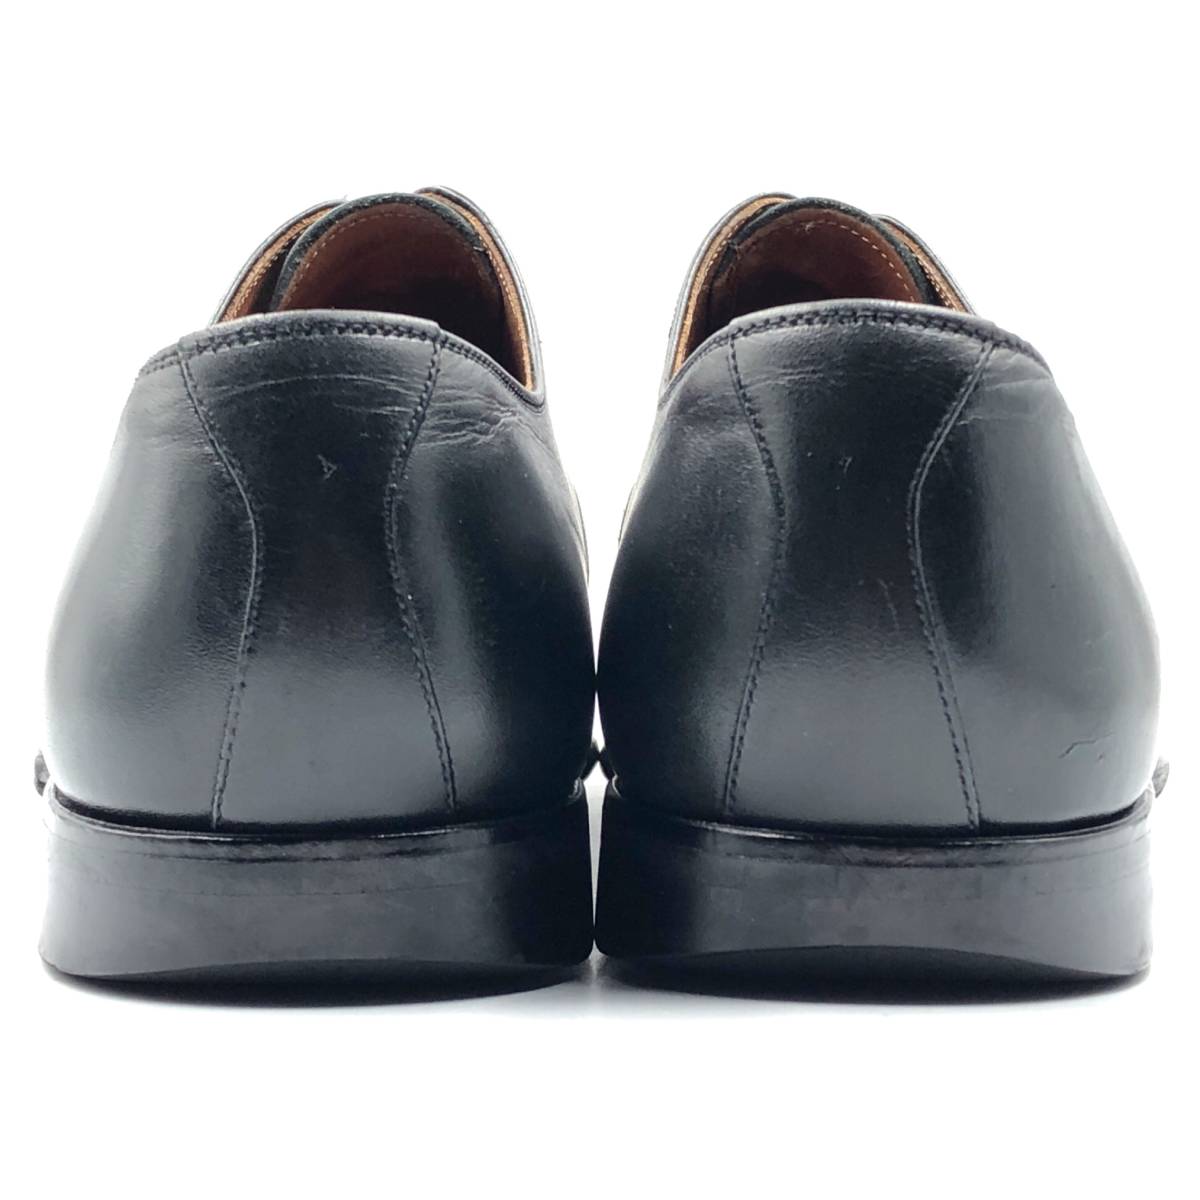 即決 SCOTCH GRAIN スコッチグレイン 26cmE R-1813 メンズ レザーシューズ ストレートチップ 黒 ブラック 革靴 皮靴 ビジネスシューズ_画像4